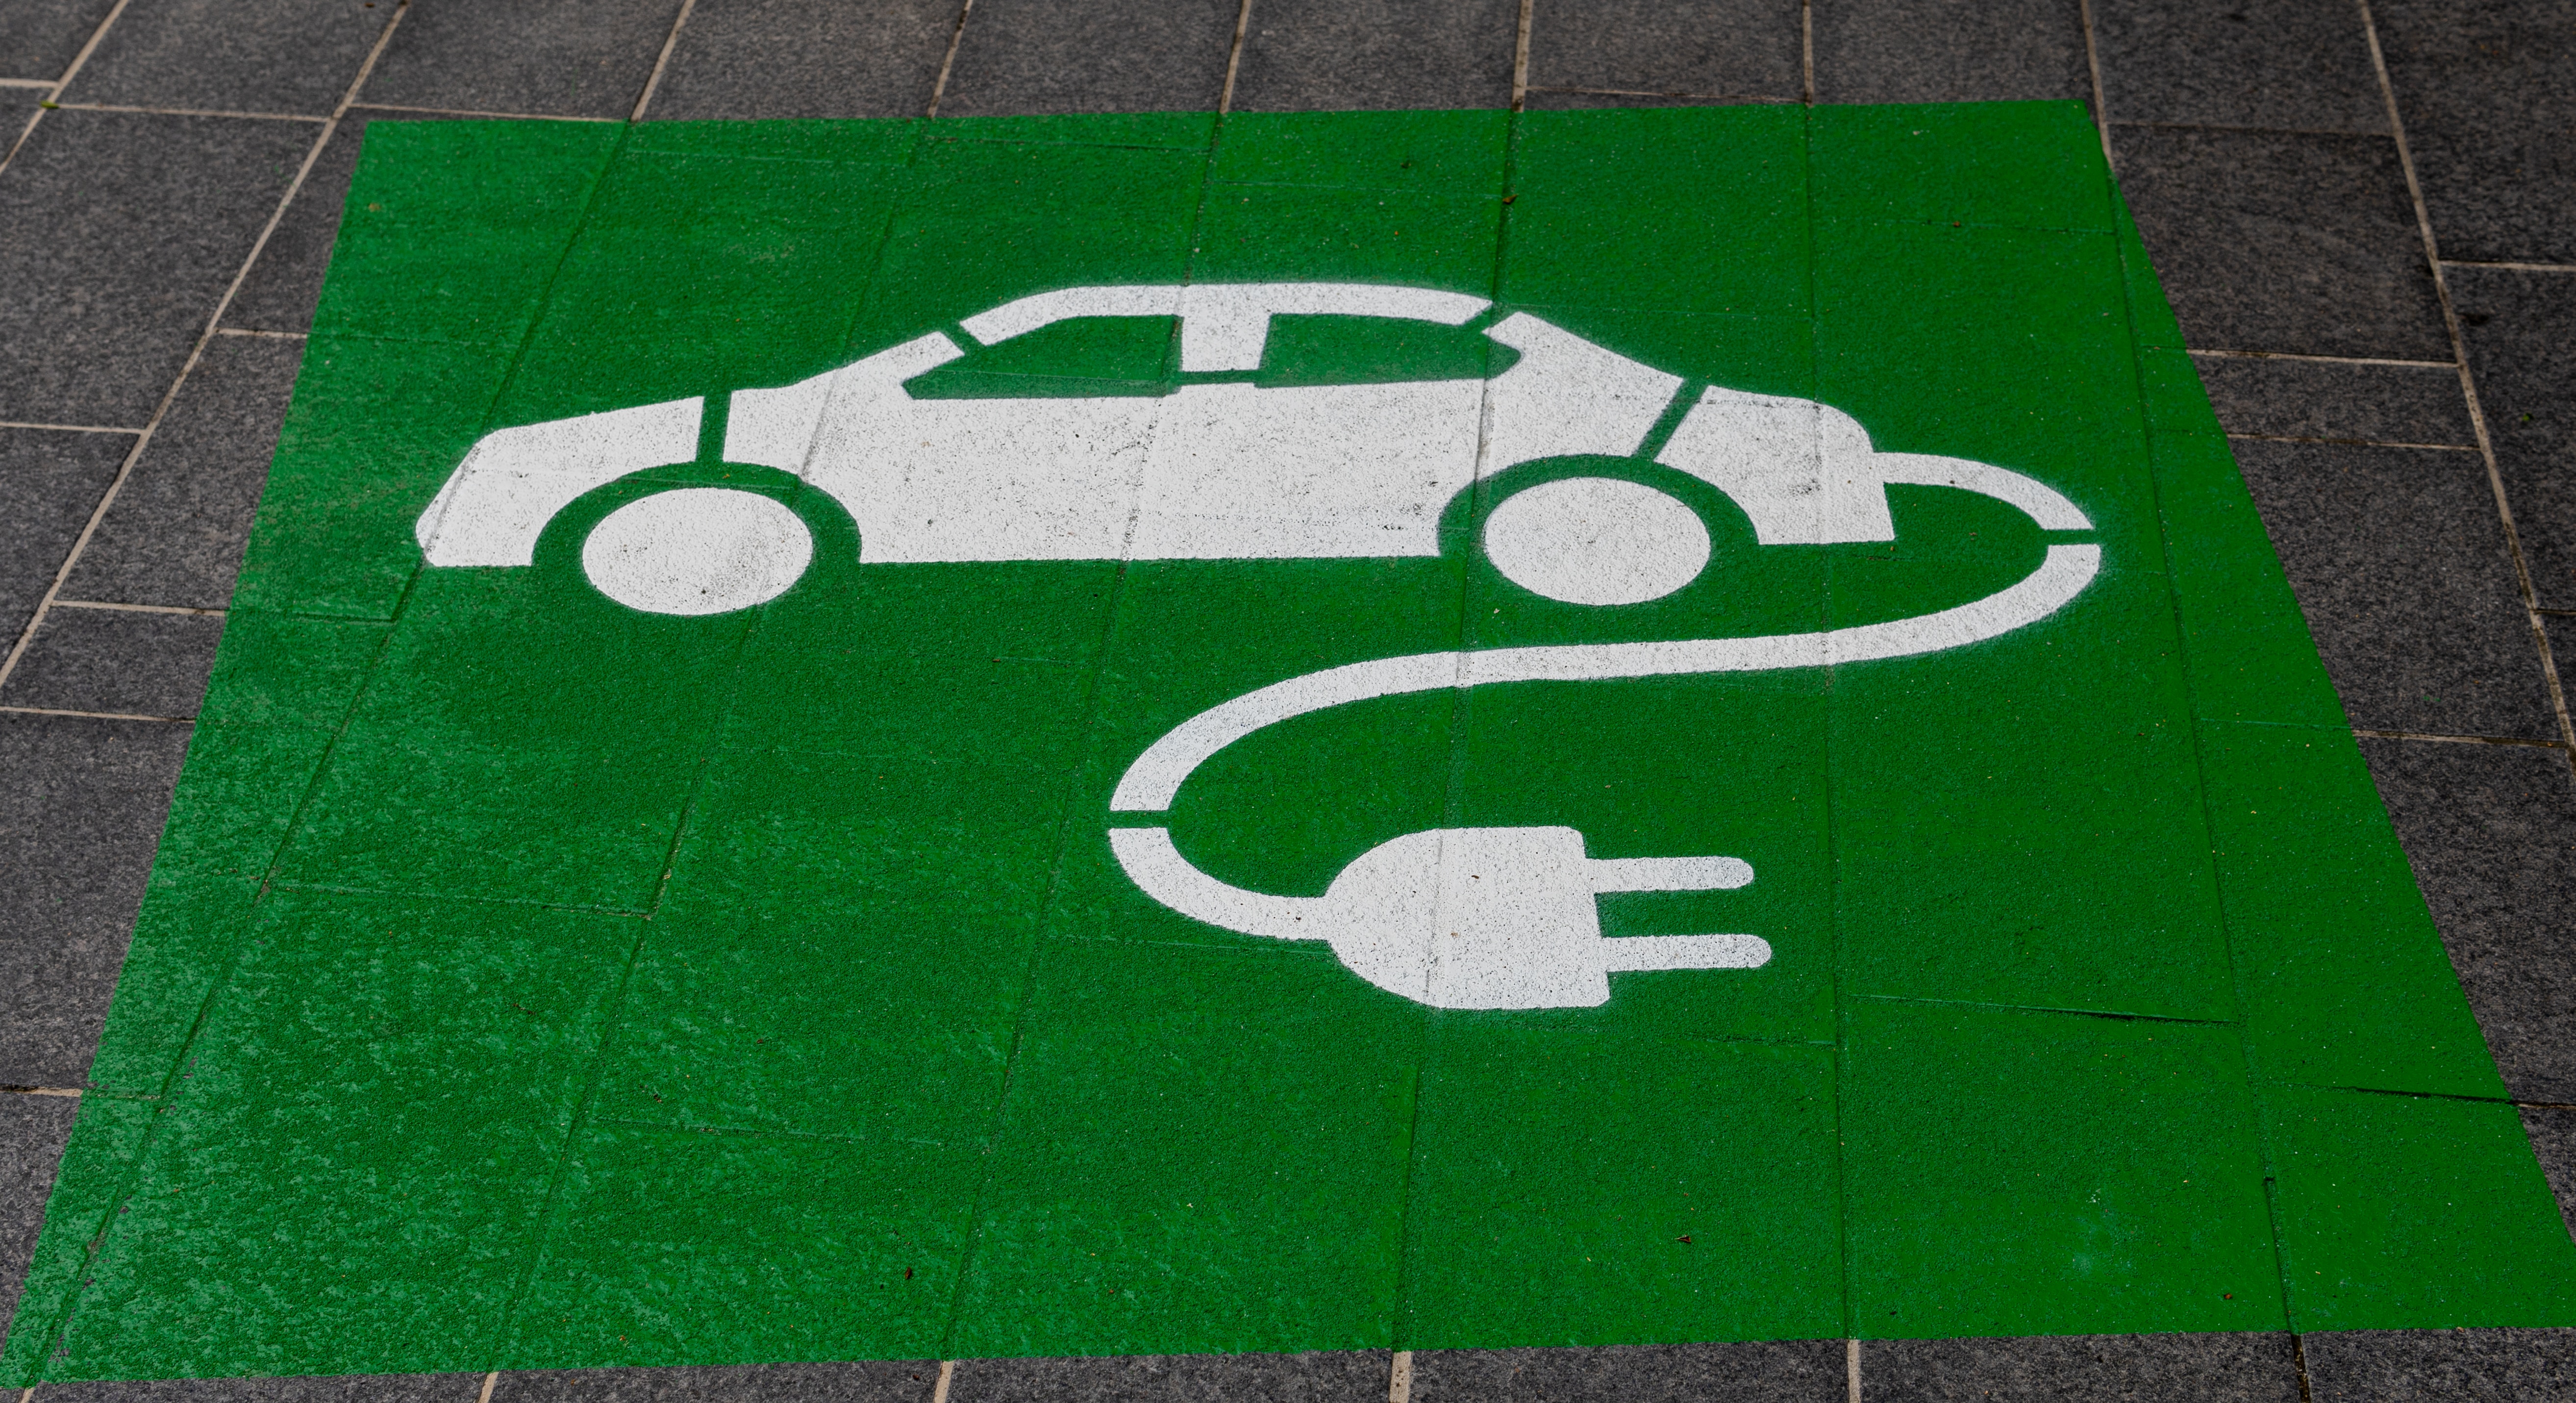 Autos eléctricos impulsan comercio mundial de mercancías: UNCTAD